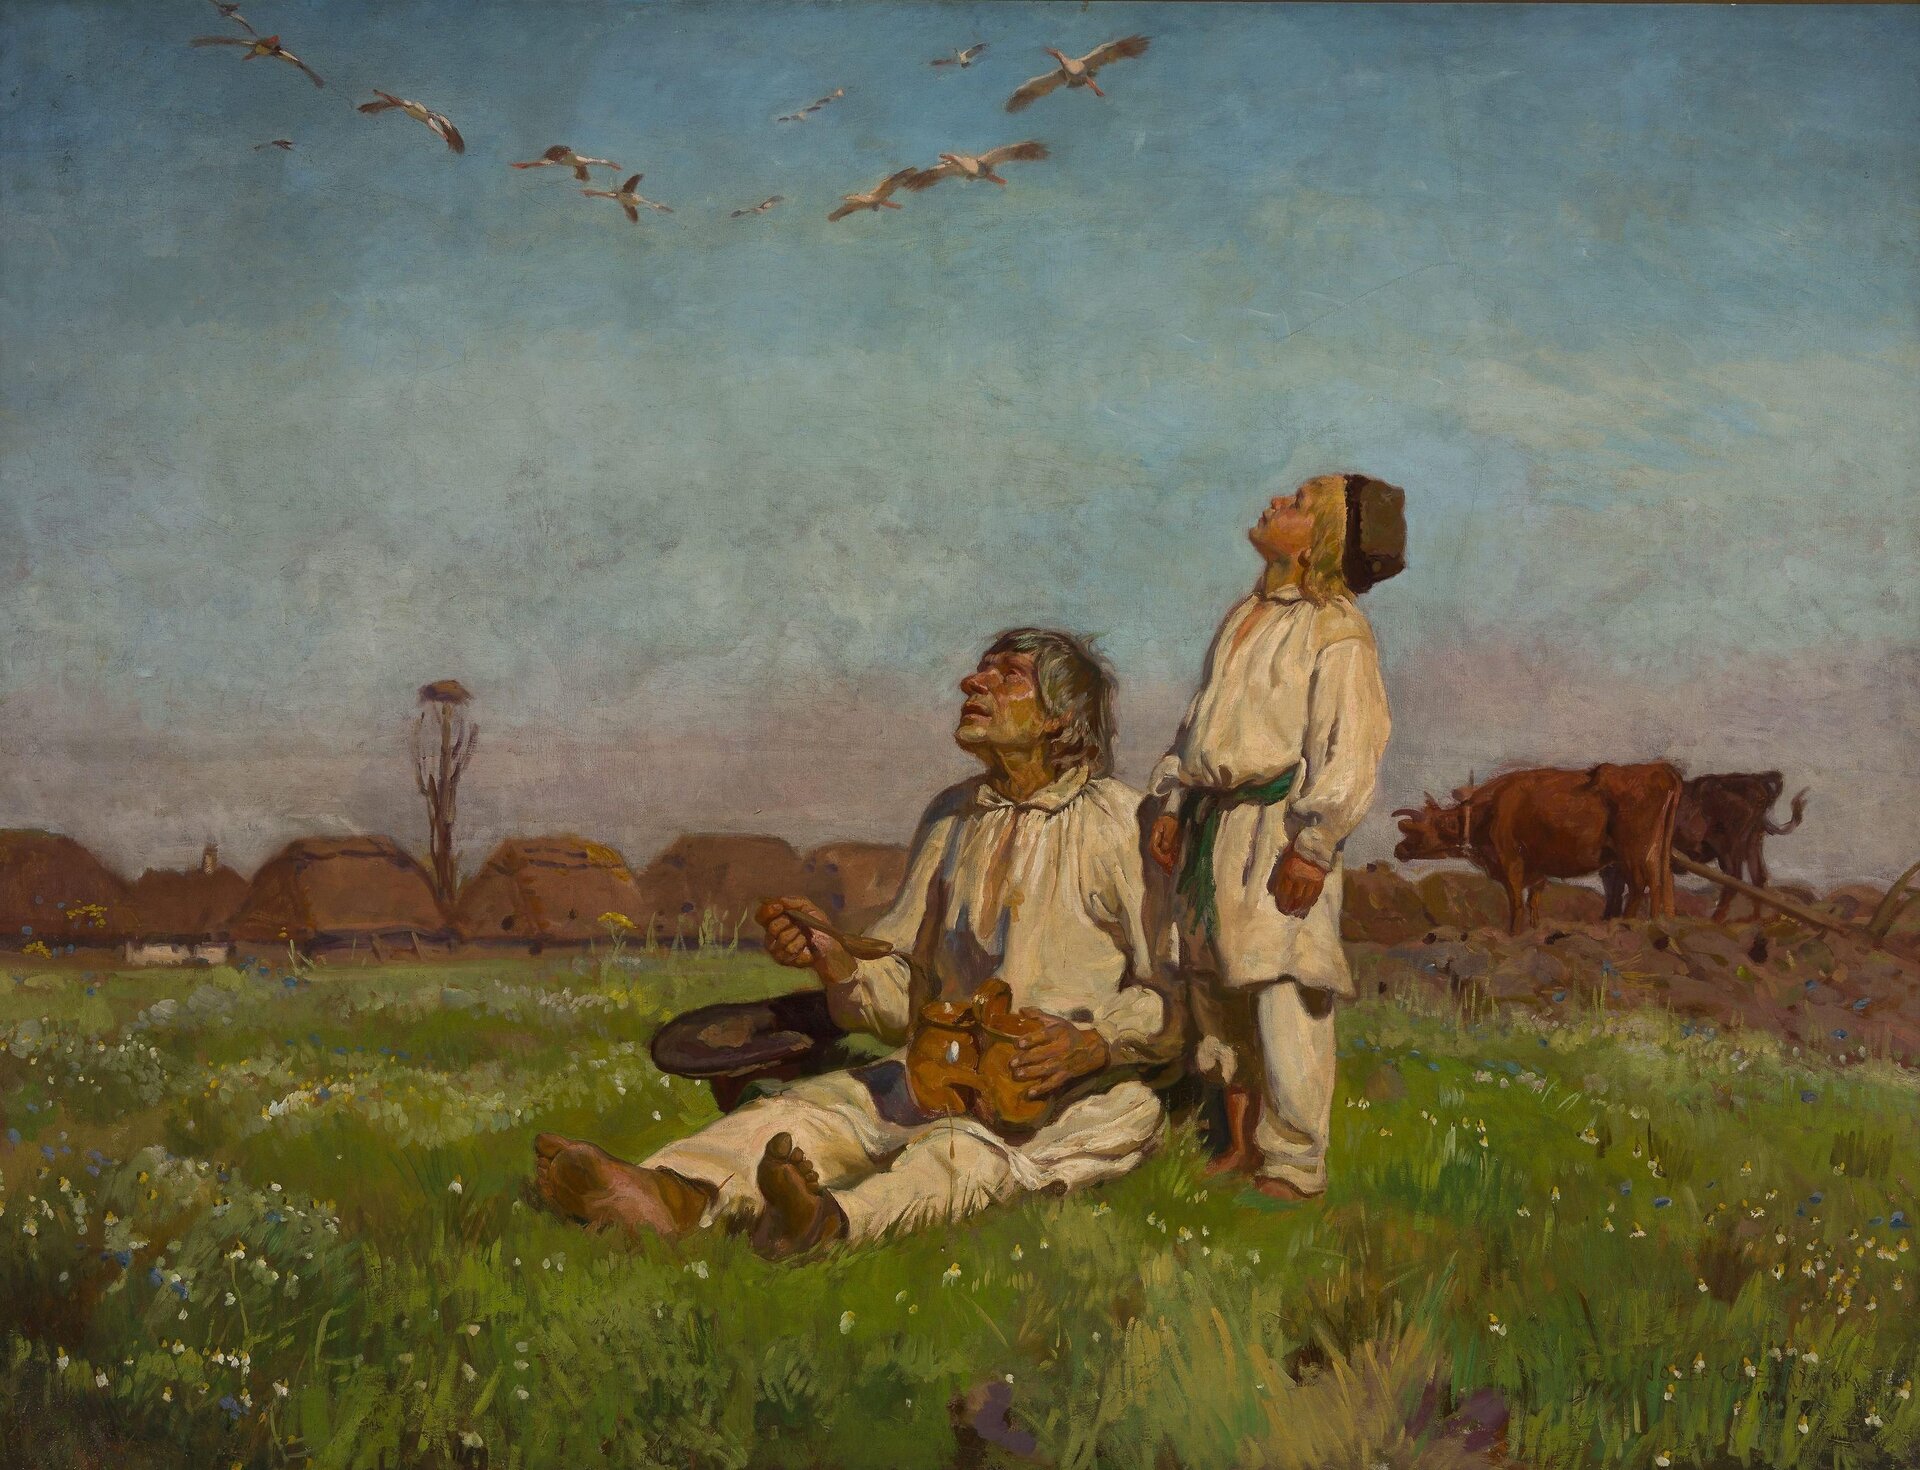 Na obrazie mężczyzna i chłopiec w płóciennych strojach. Mężczyzna siedzi na łące, chłopiec stoi obok niego. Obserwują klucz bocianów na niebie. Za nimi na łące znajdują się krowy, a dalej wiejskie chaty.